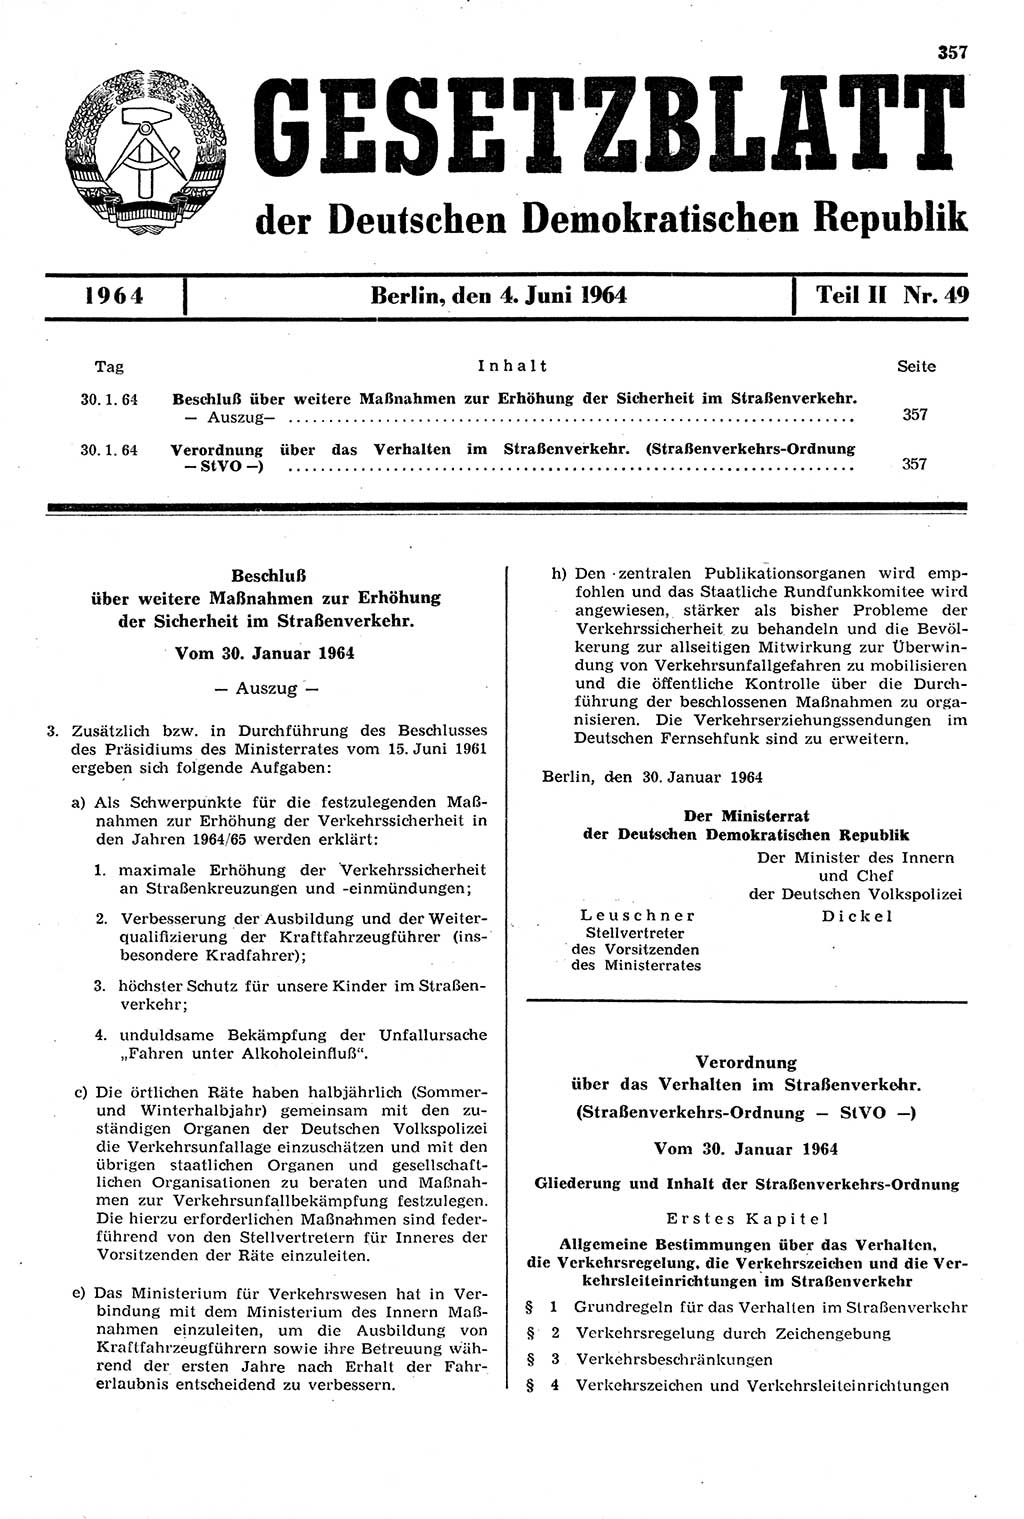 Gesetzblatt (GBl.) der Deutschen Demokratischen Republik (DDR) Teil ⅠⅠ 1964, Seite 357 (GBl. DDR ⅠⅠ 1964, S. 357)